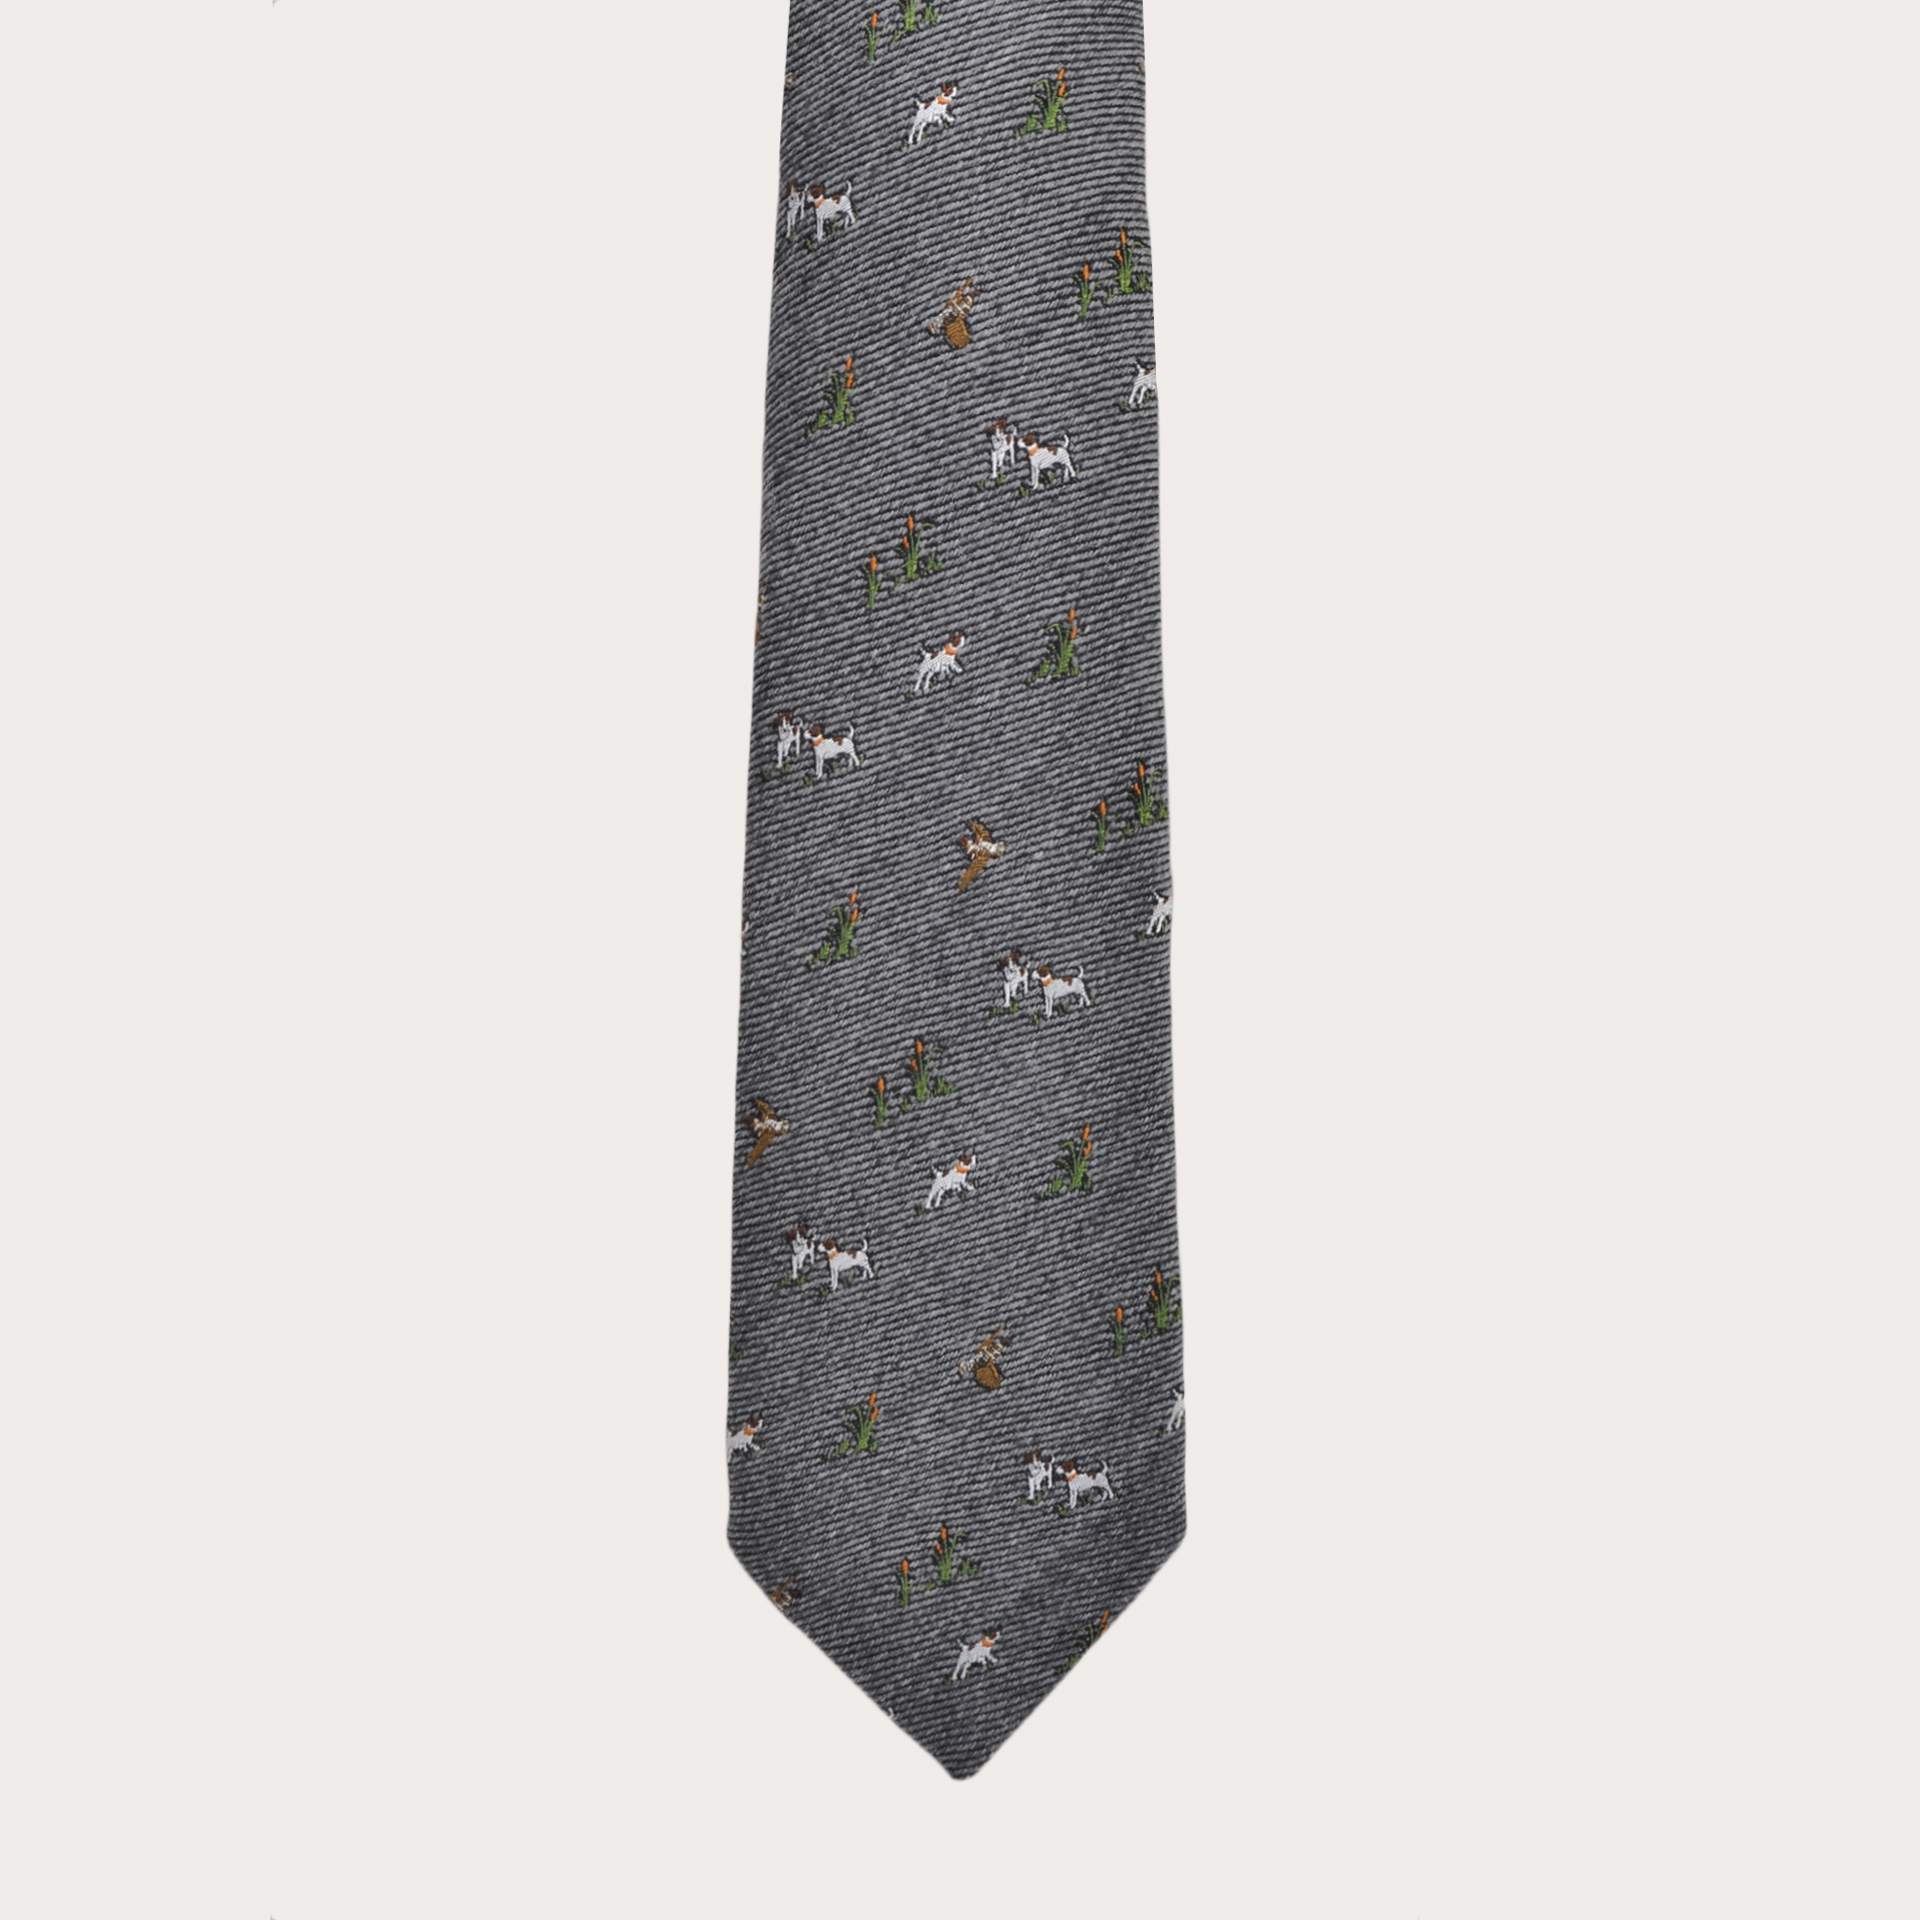 BRUCLE Krawatte aus Seide und Wolle, grau mit aufgestickten Hunden und Falken